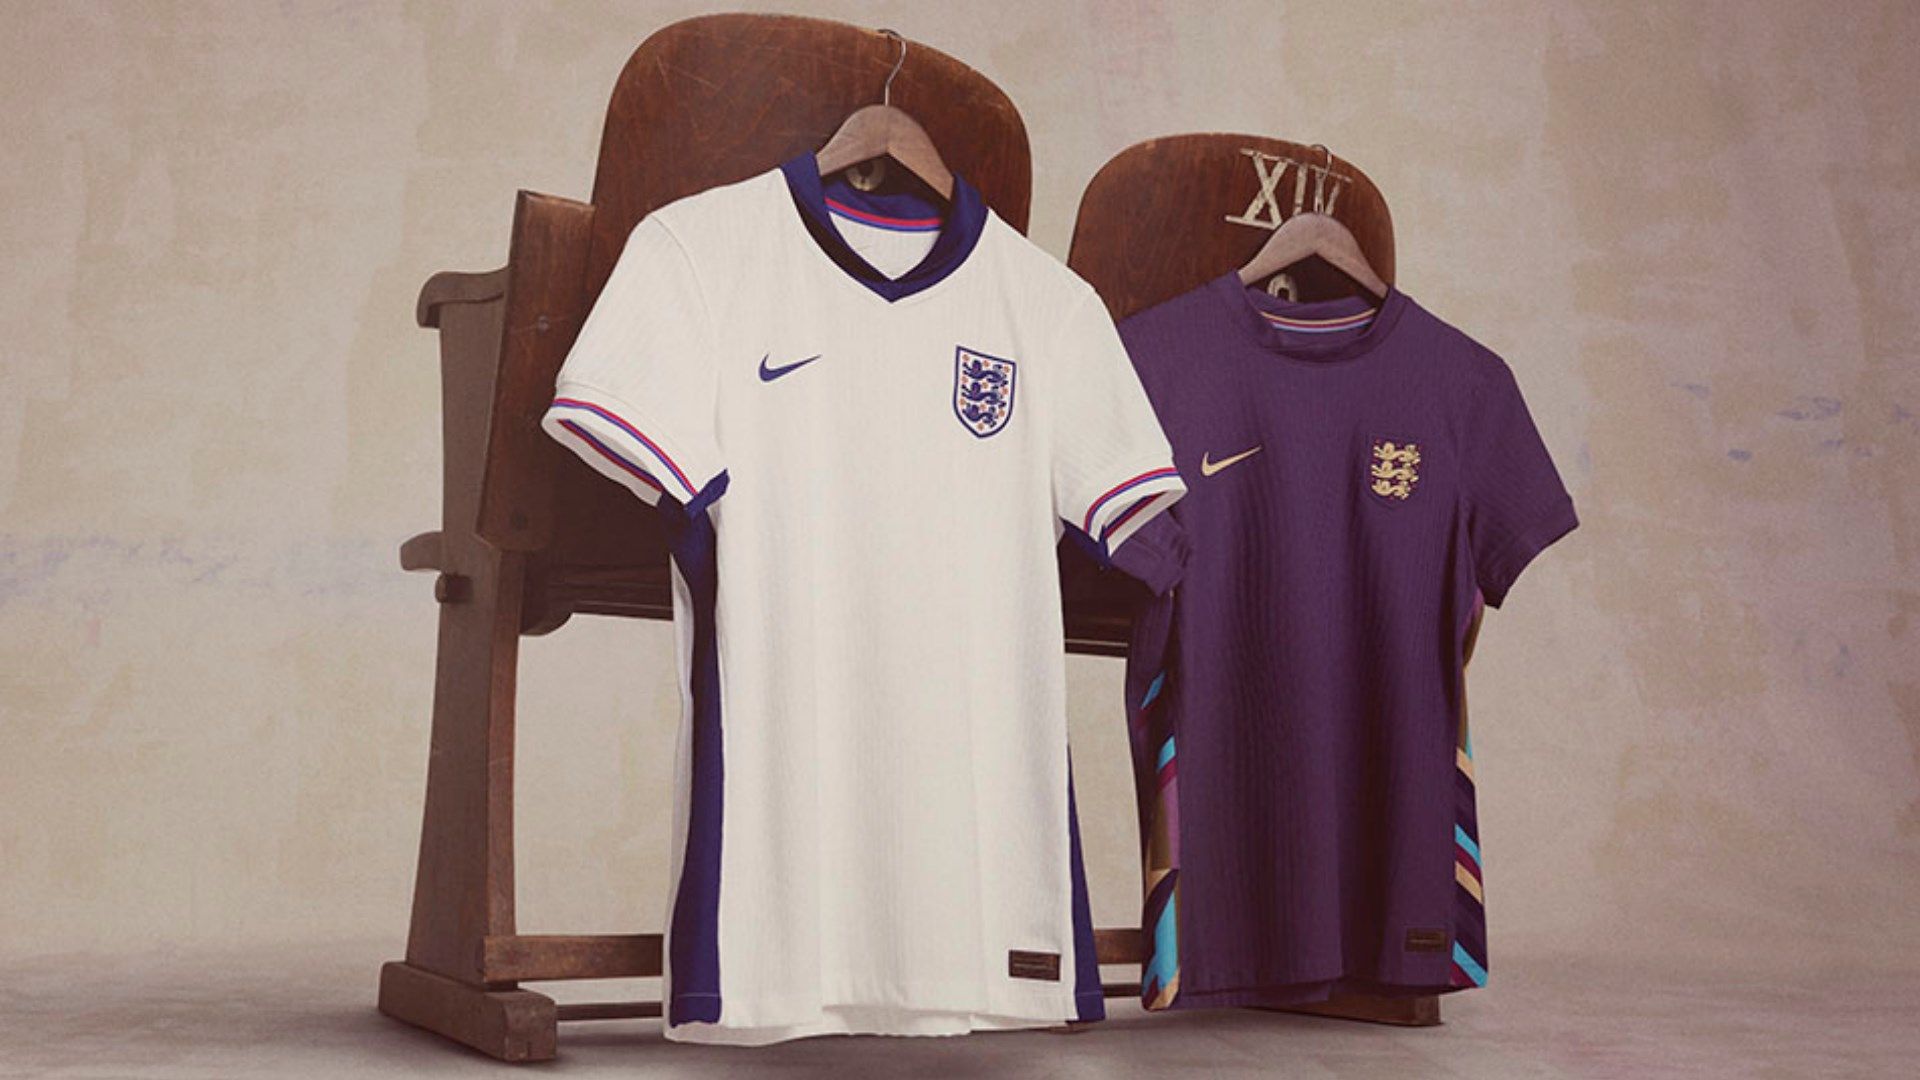 England Home and Away Kits